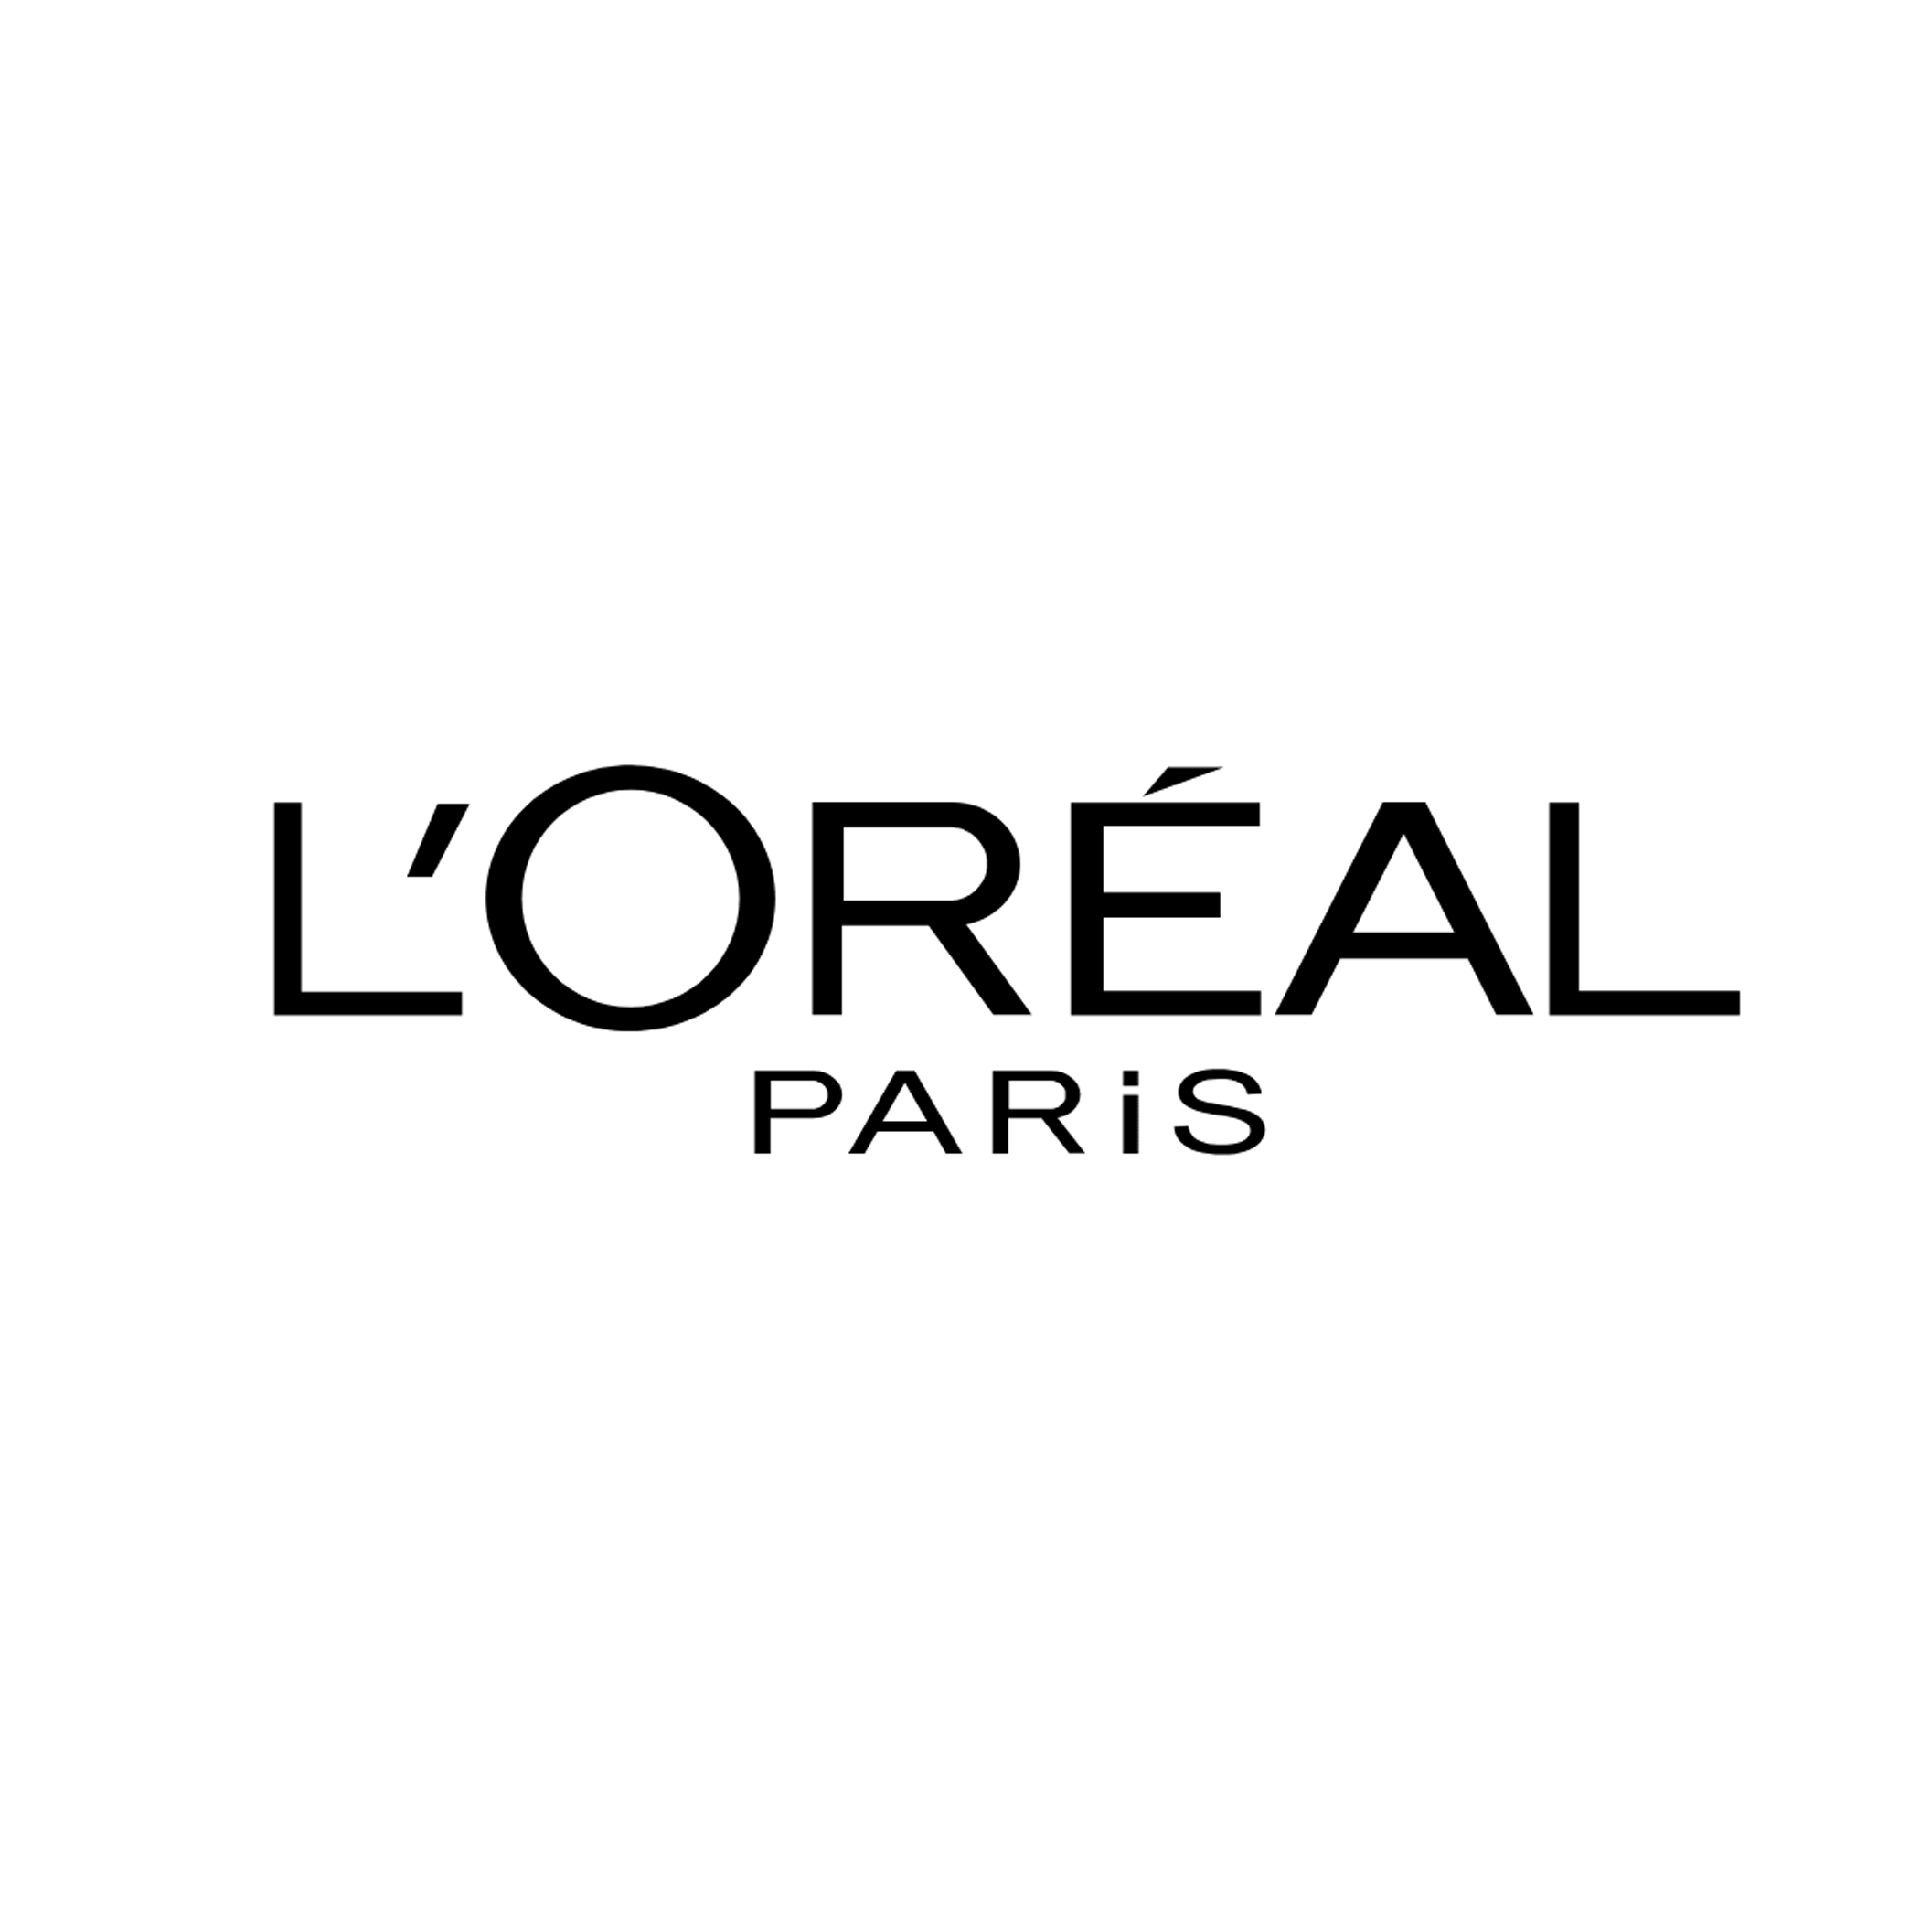 Product Brand: L'ORE'AL